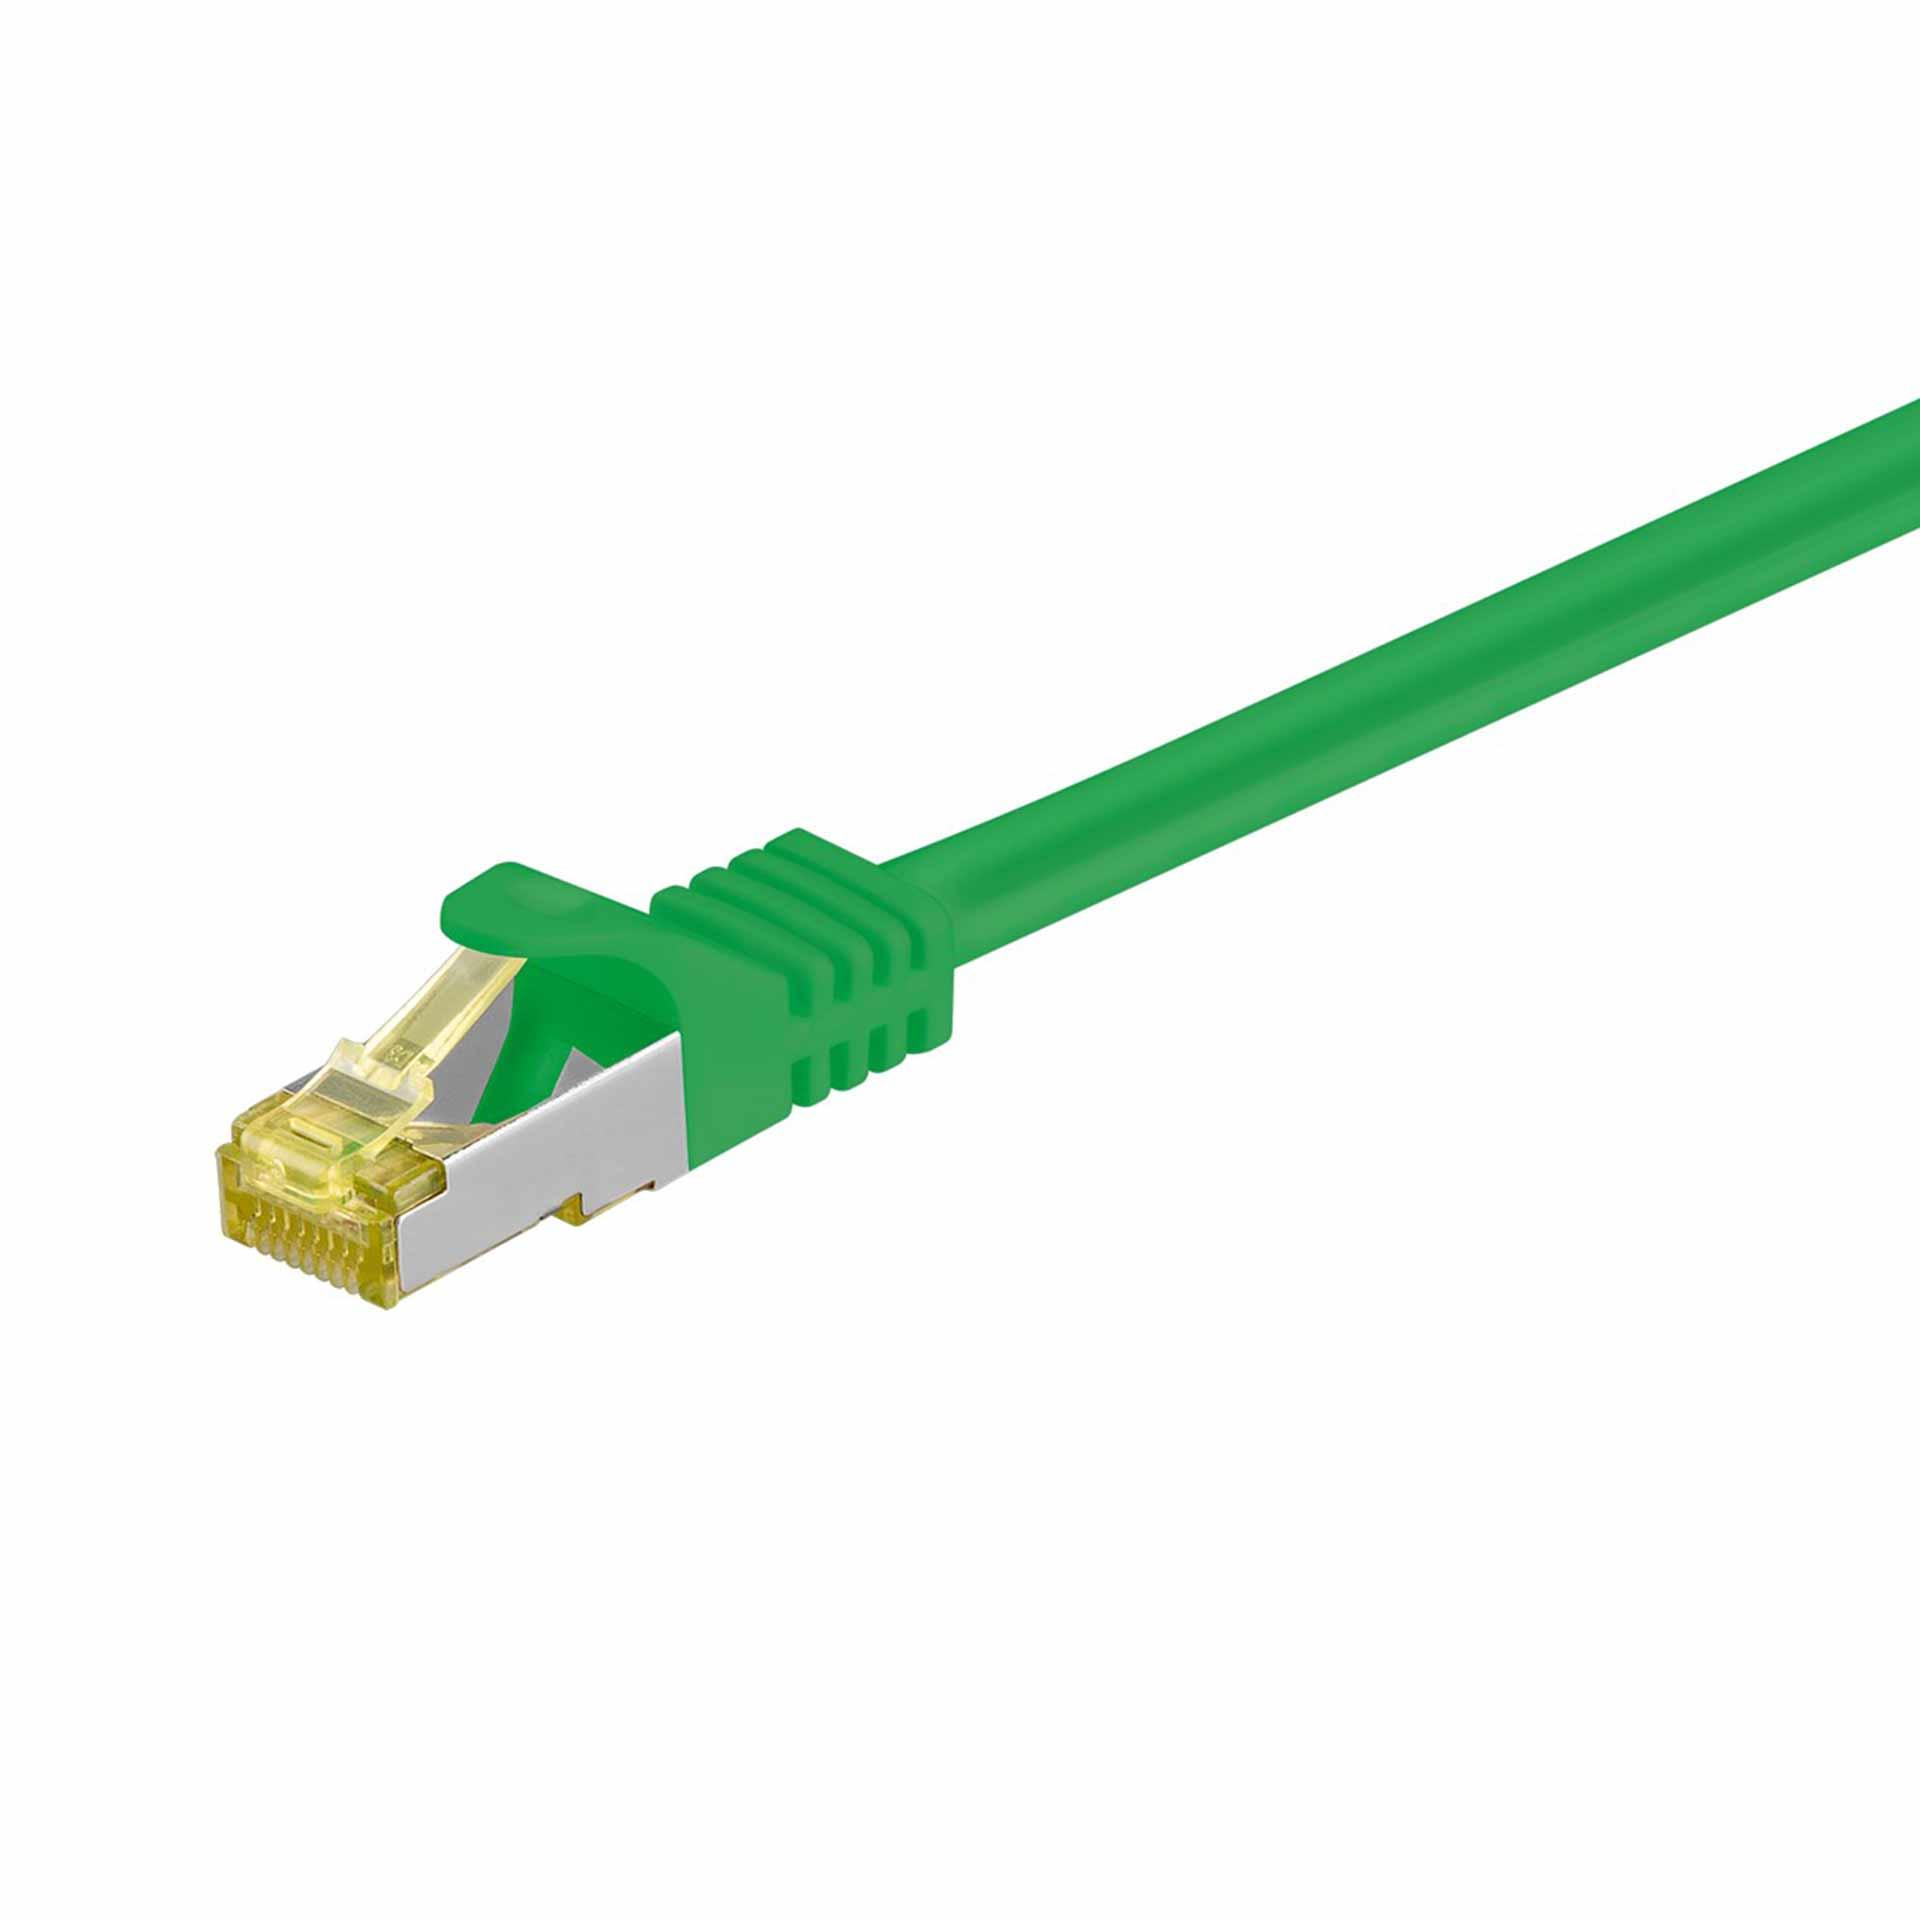 CAT 6A câble de raccordement S/FTP (PiMF),500mm, vert, LSZH sans halogène, 500 Mhz, câble brut CAT 7